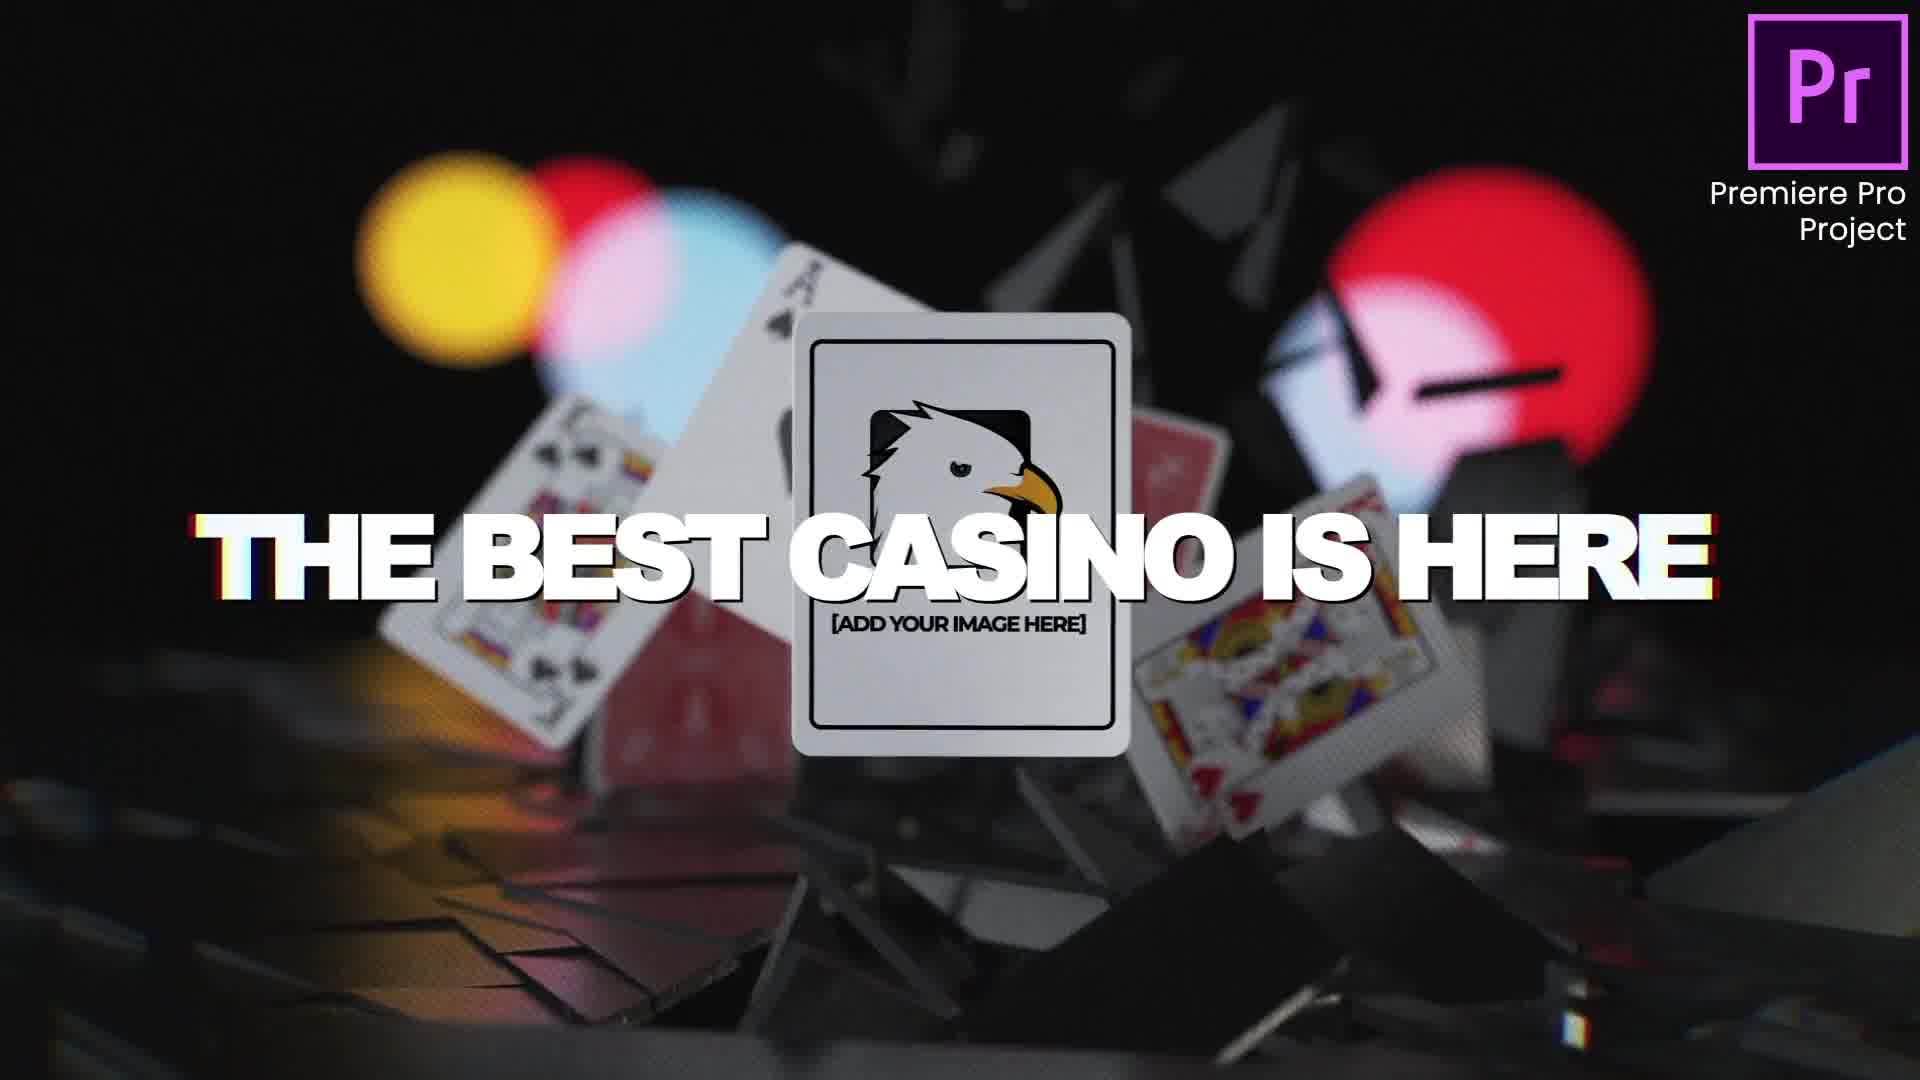 Online Casino Promo |Online Roulette Intro | Slot Machine Game| Poker App| Premiere Pro Videohive 33948684 Premiere Pro Image 11